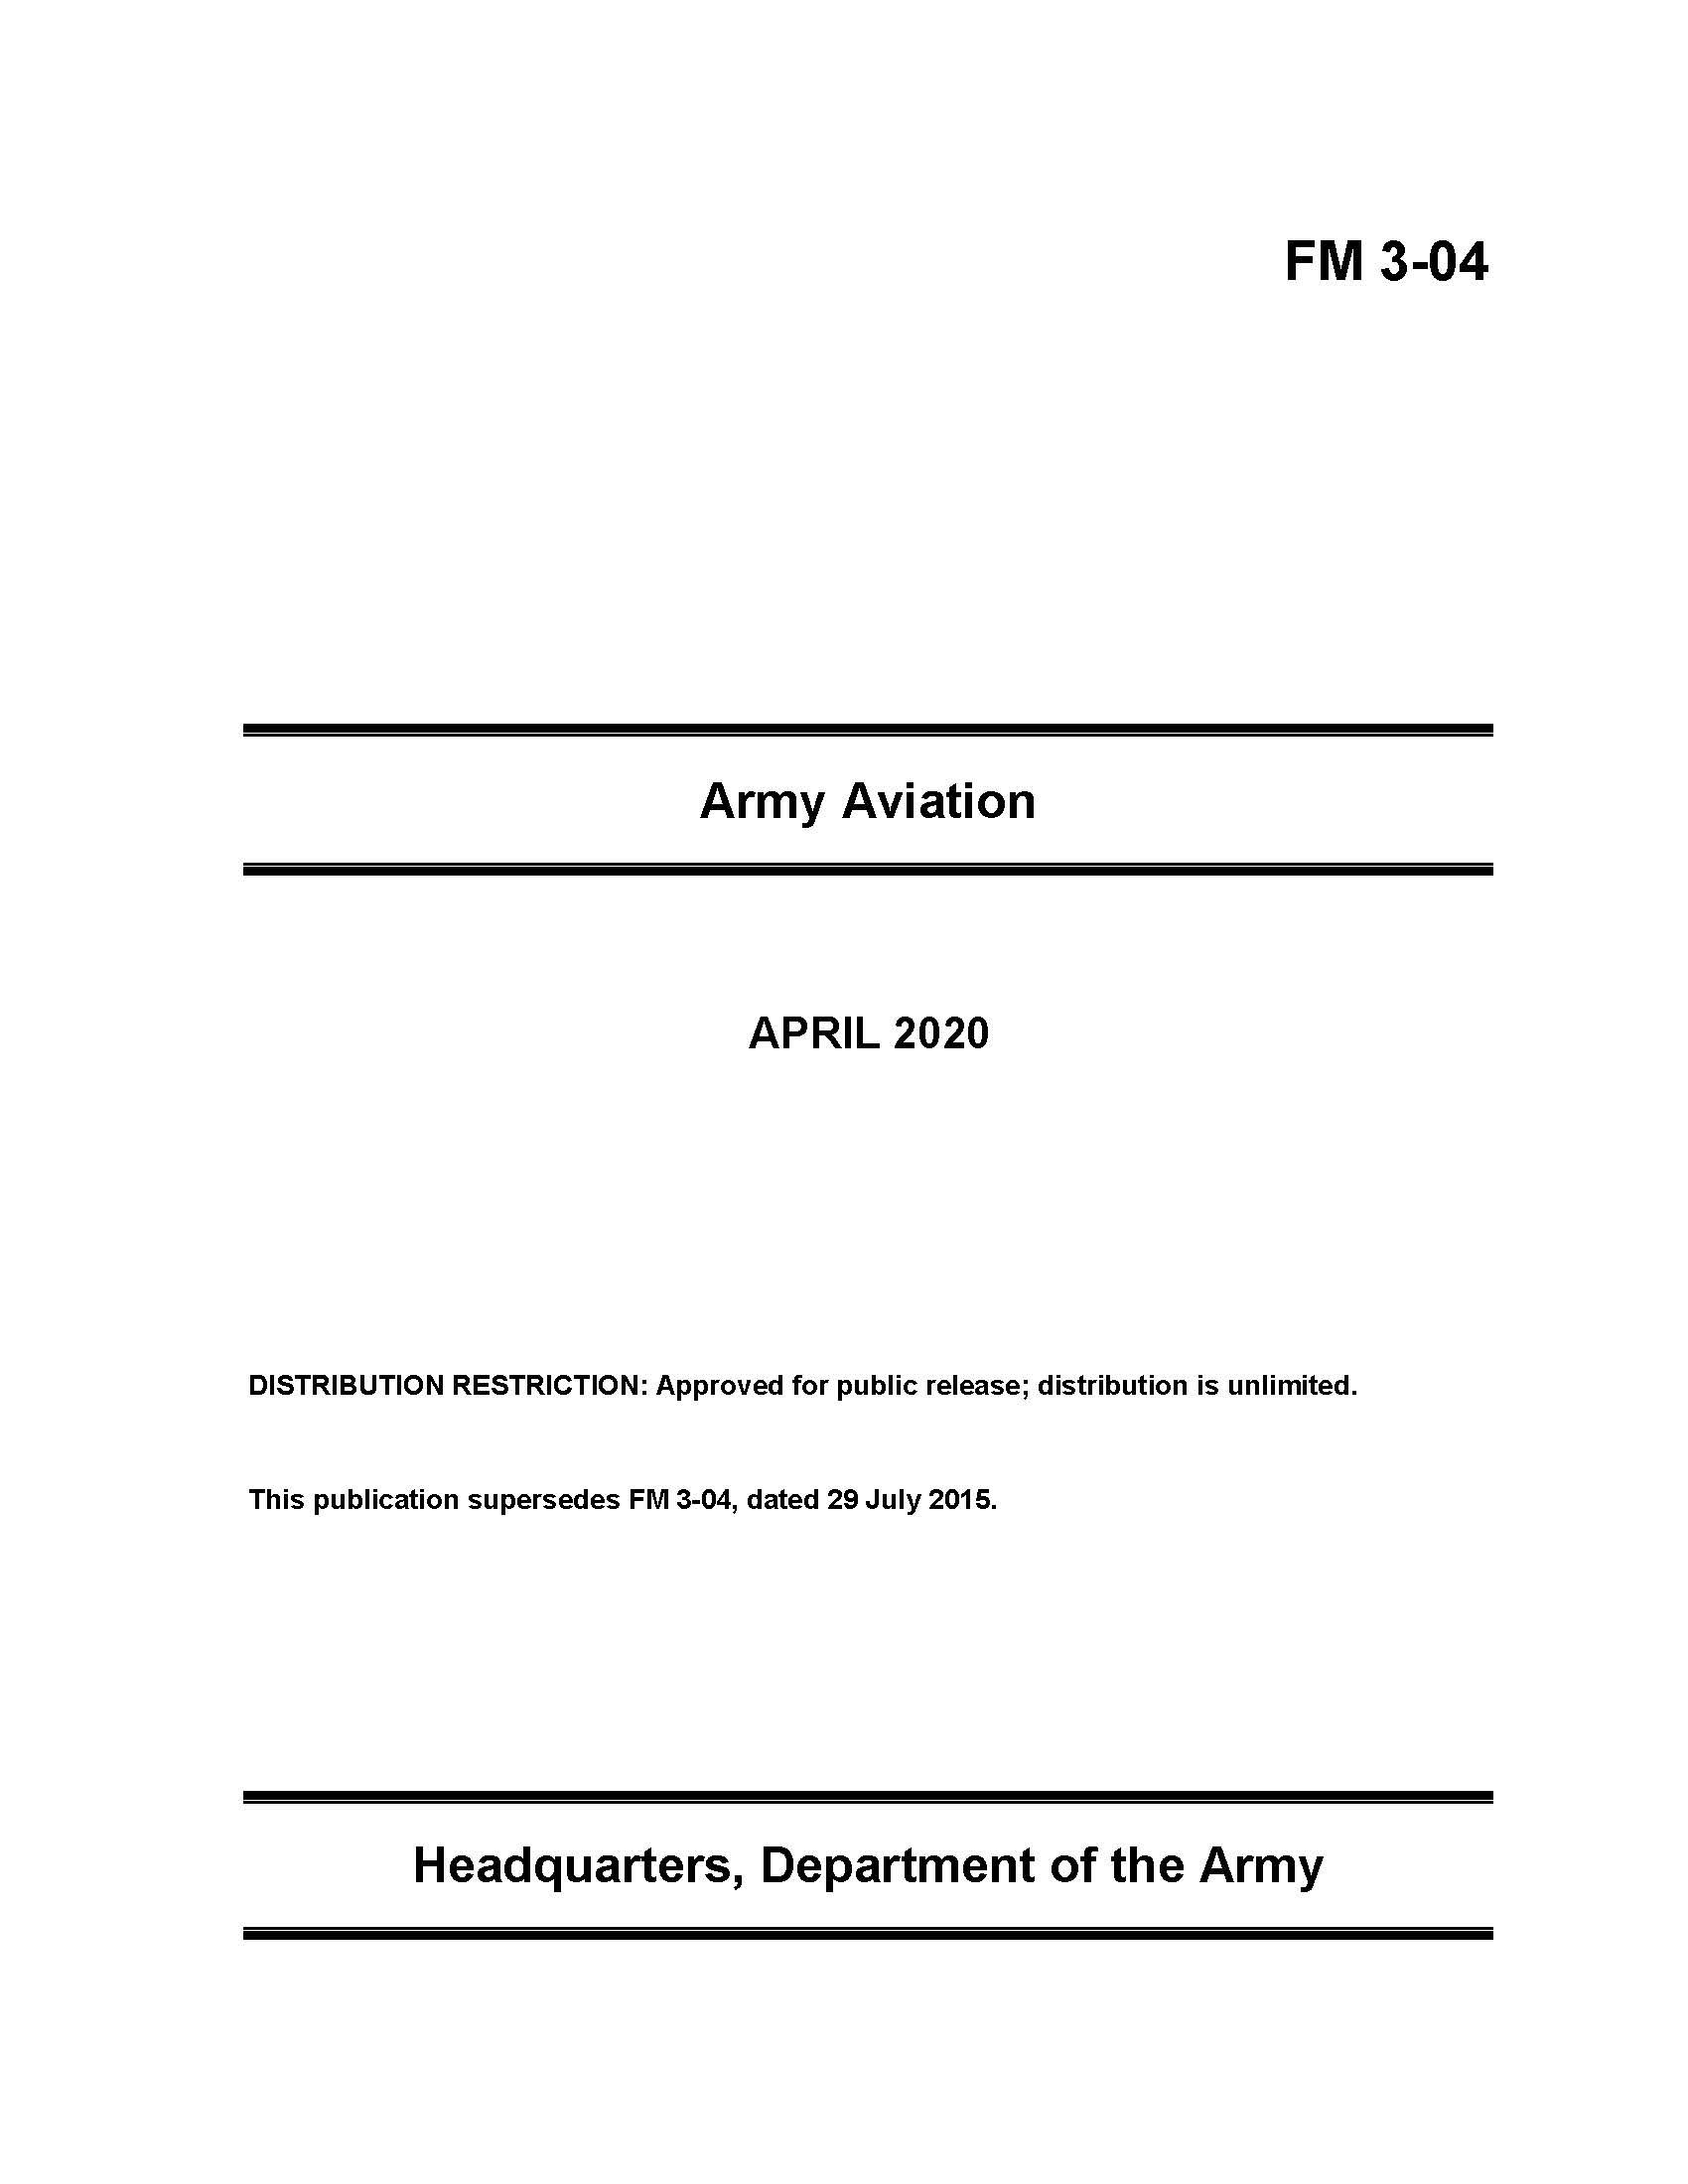 FM 3-04 Army Aviation - 2020 mini size